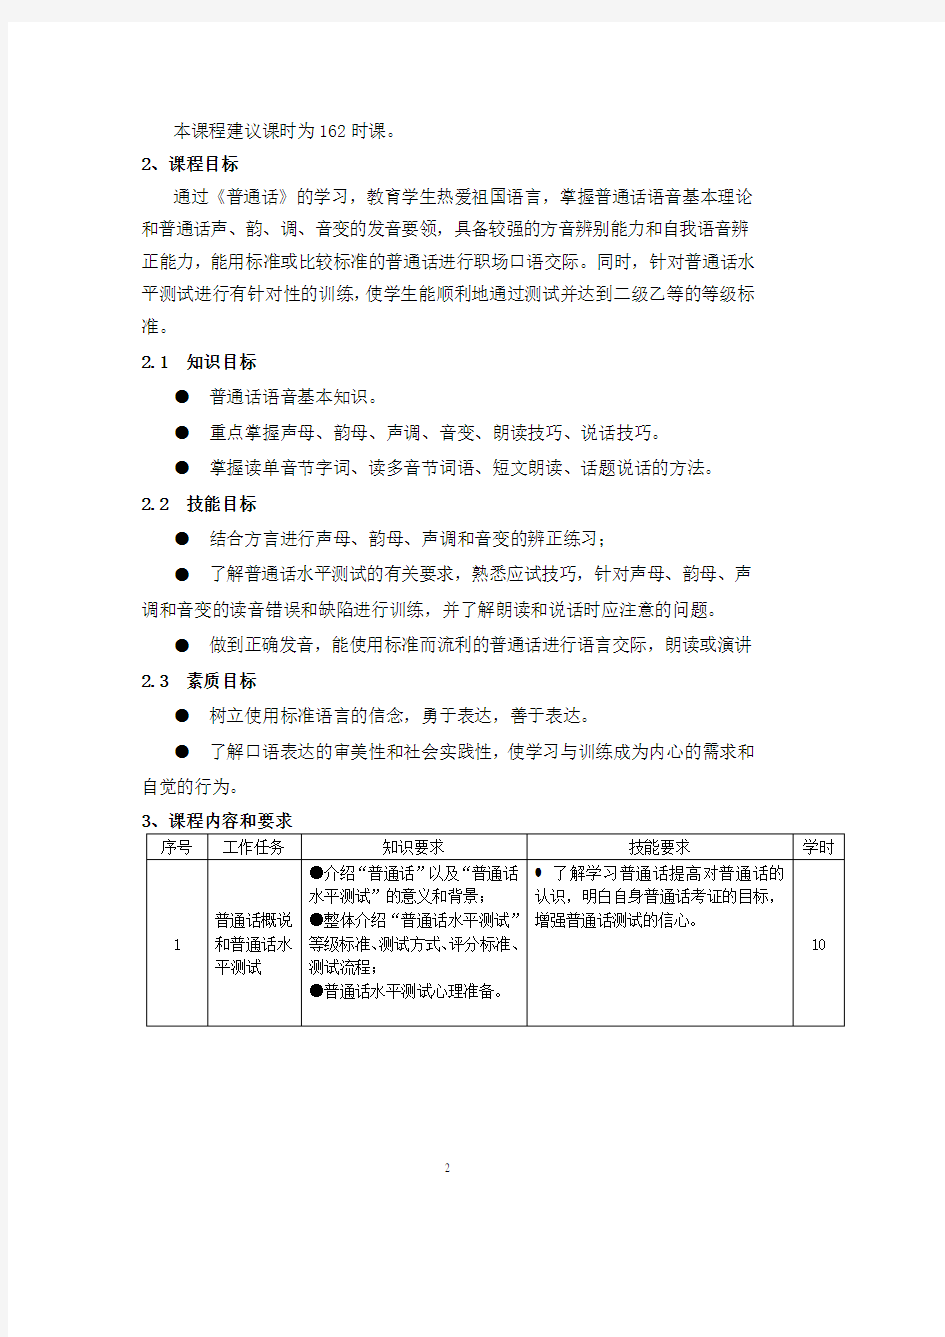 中职《普通话》课程标准.pdf